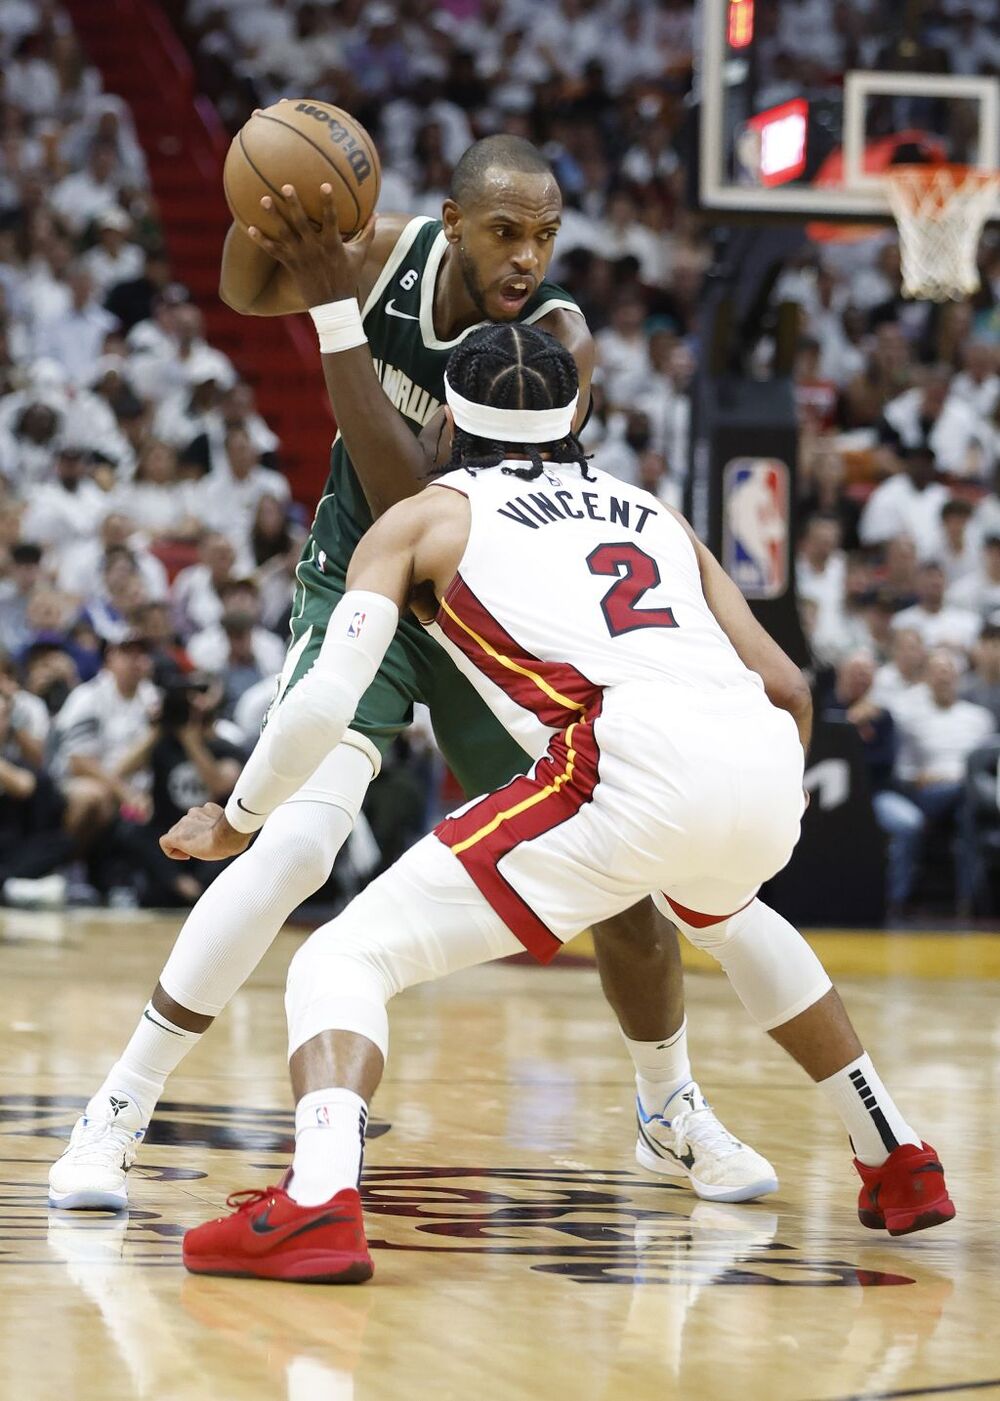 Miami Heat - Milwaukee Bucks